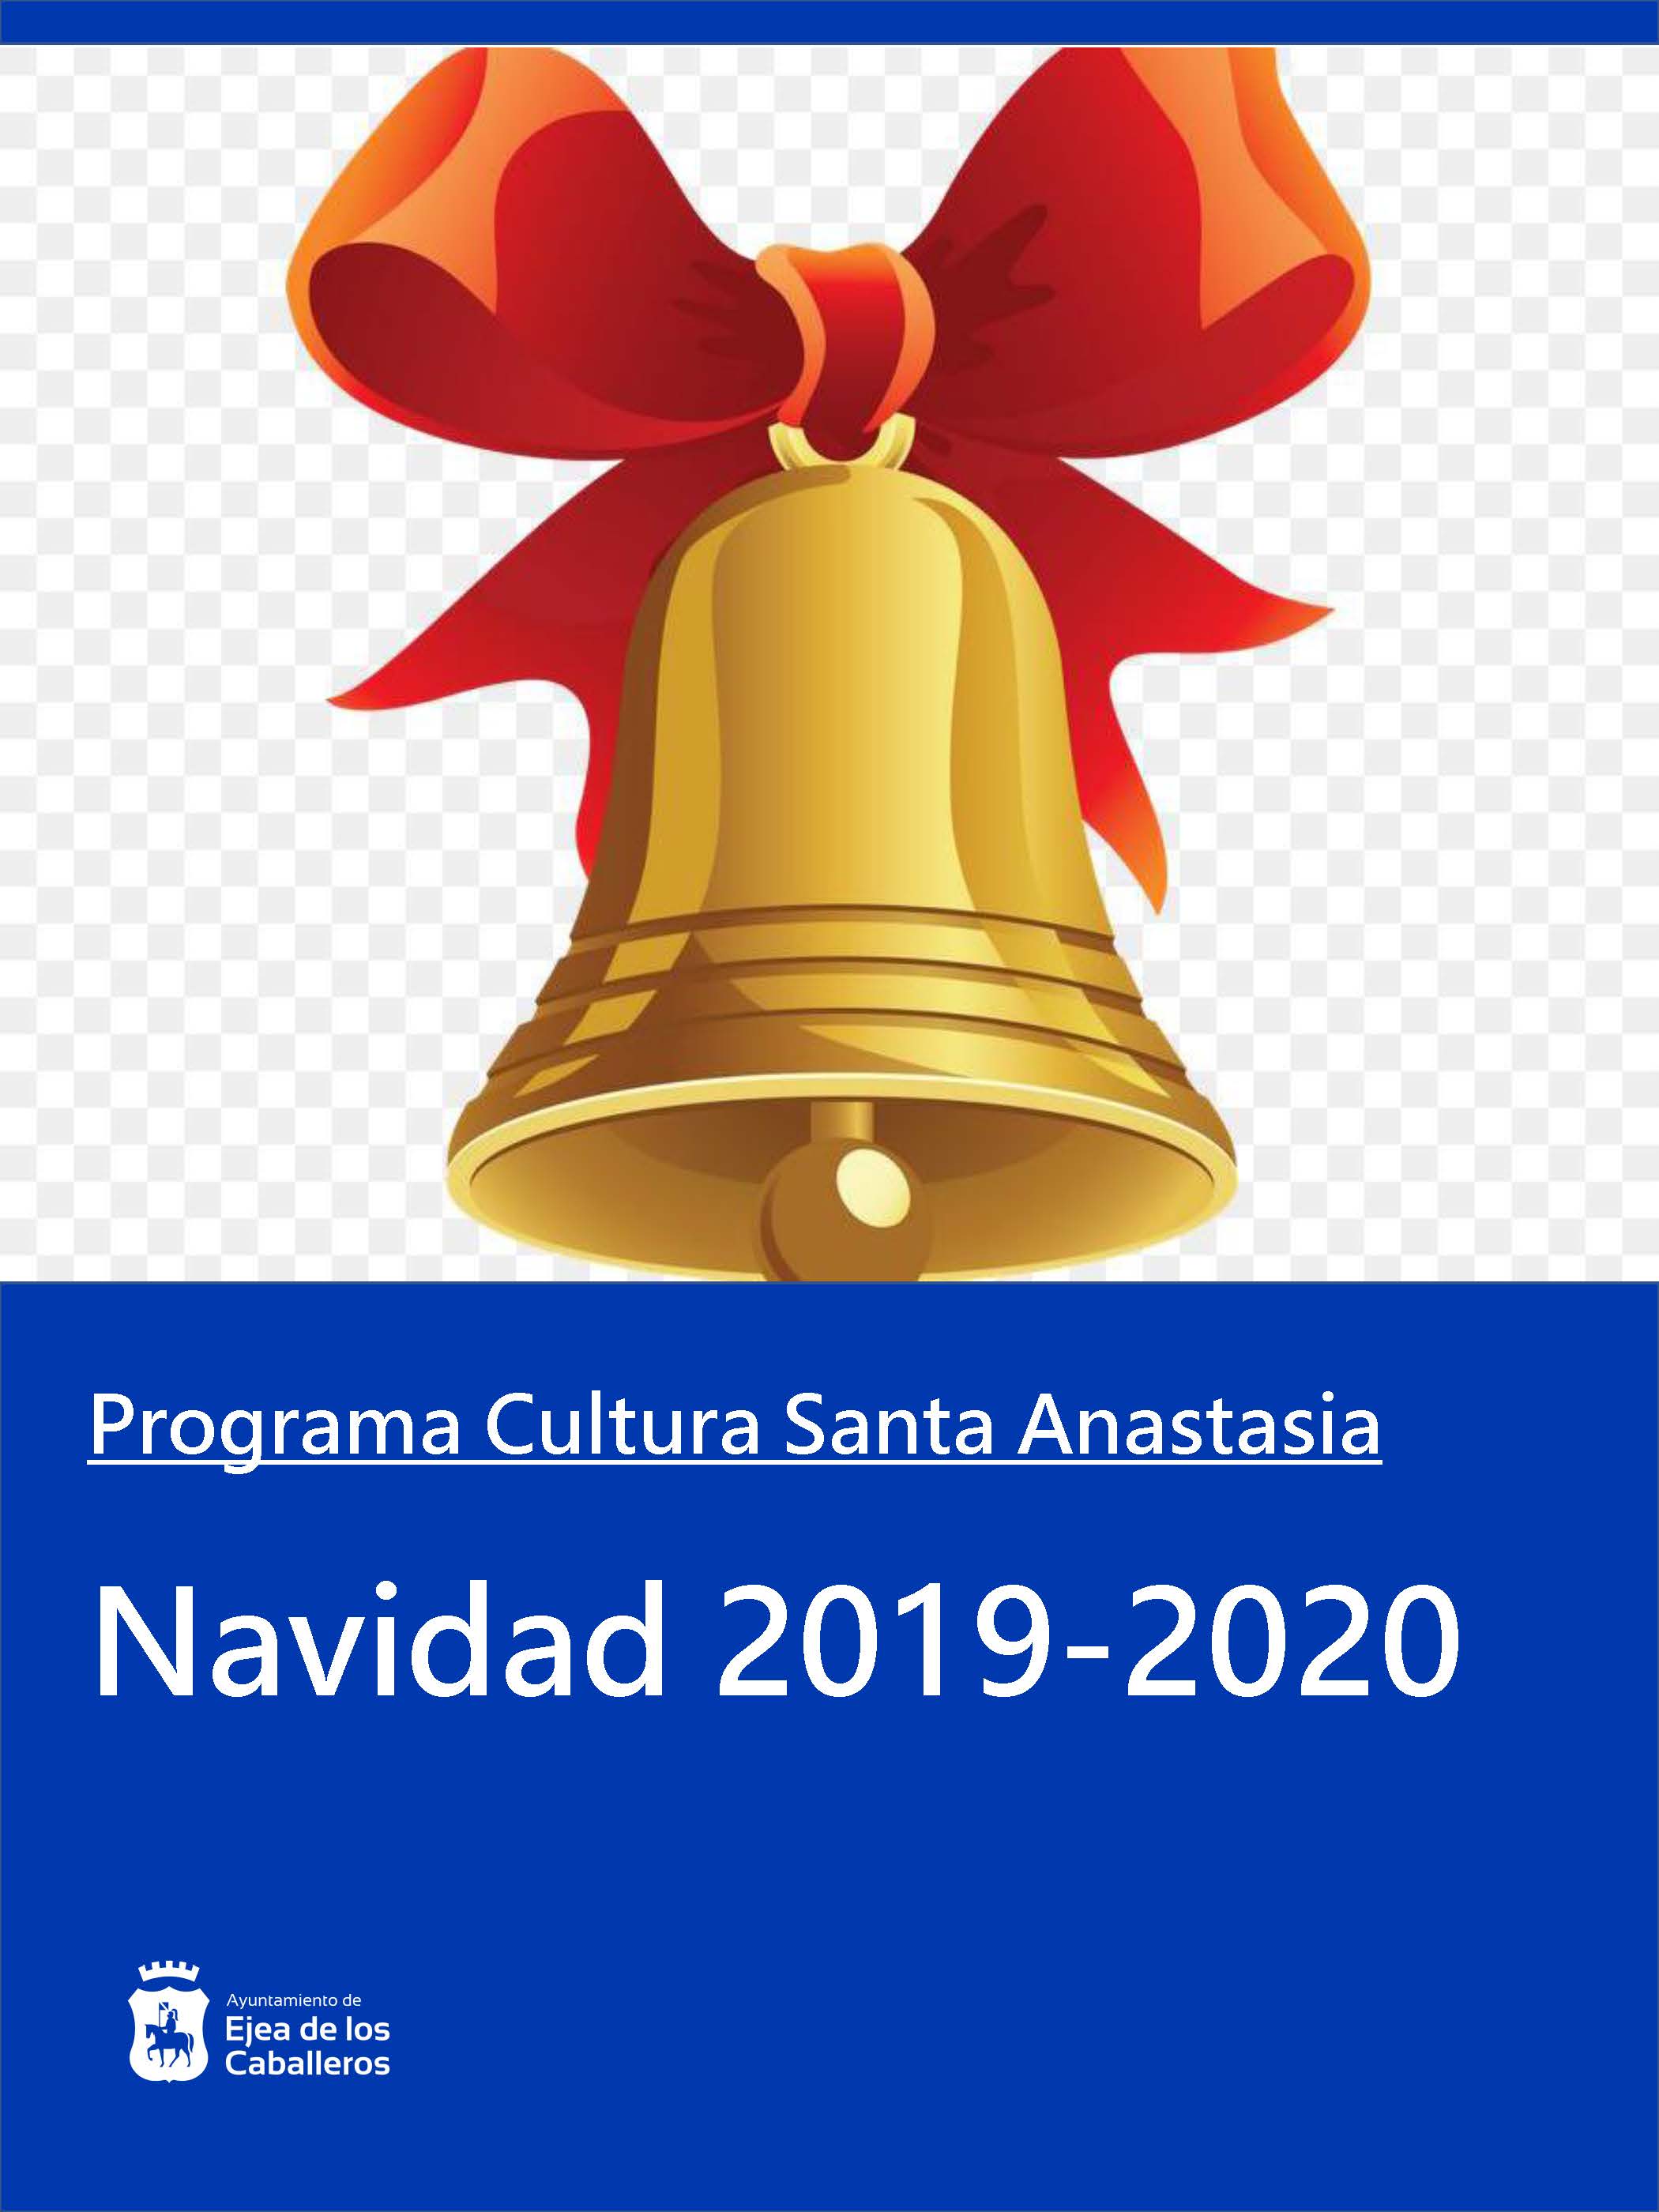 En este momento estás viendo Programa Navidad 2019-2020 en Santa Anastasia